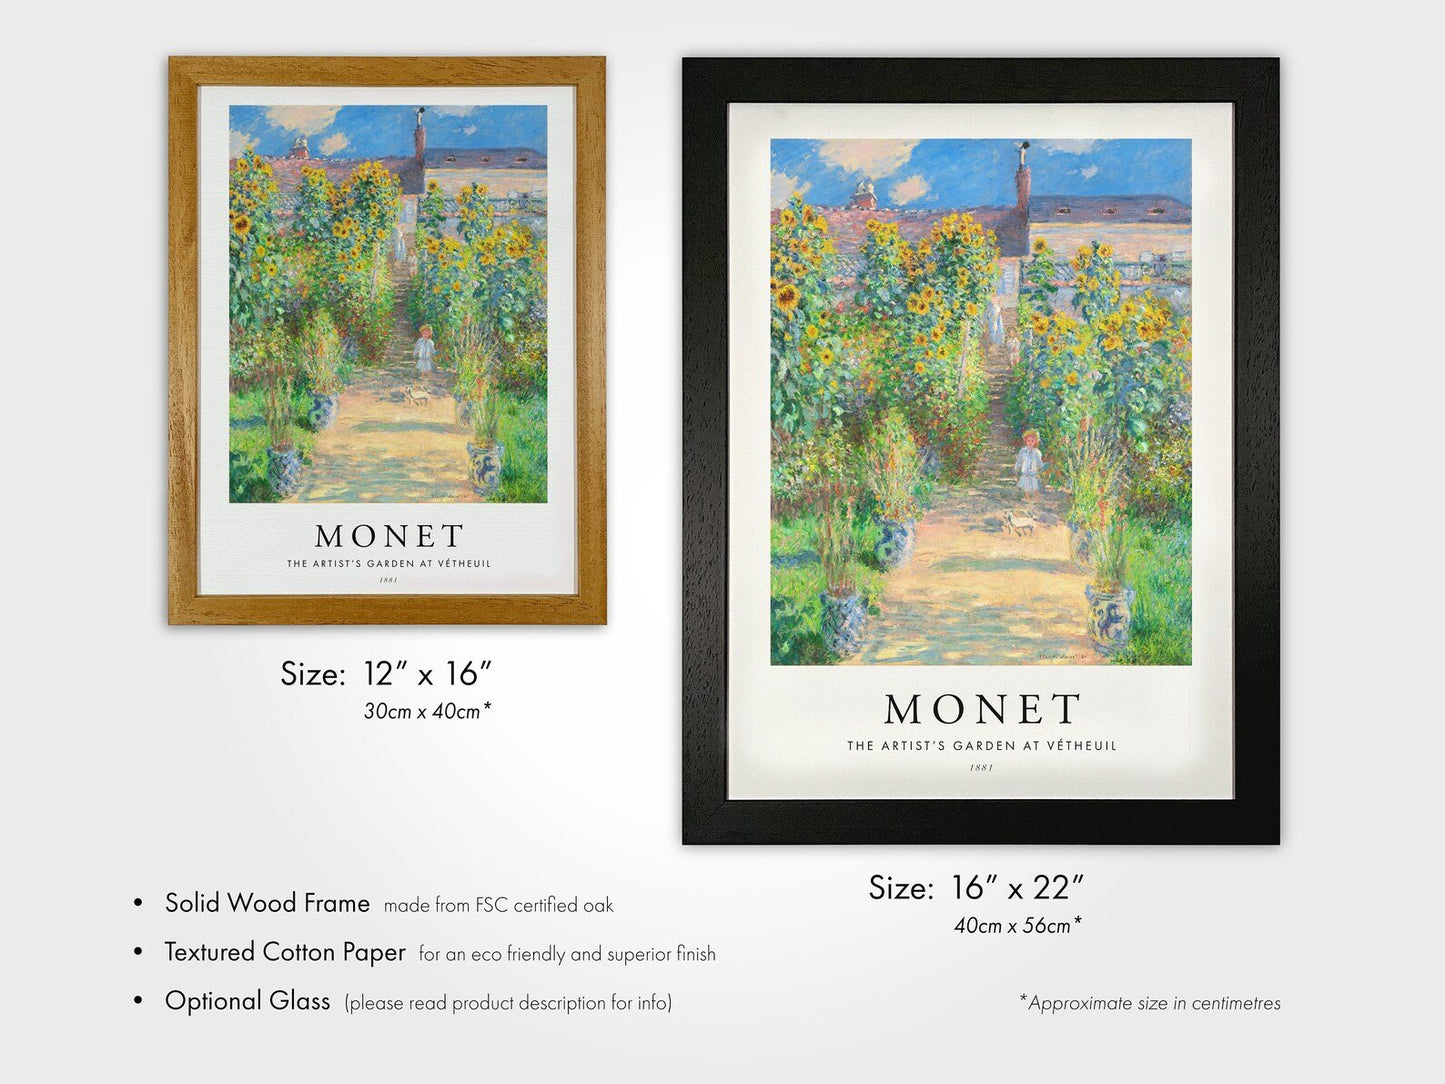 CLAUDE MONET - The Artist's Garden At Vétheuil (Poster Style) - Pathos Studio - Art Prints